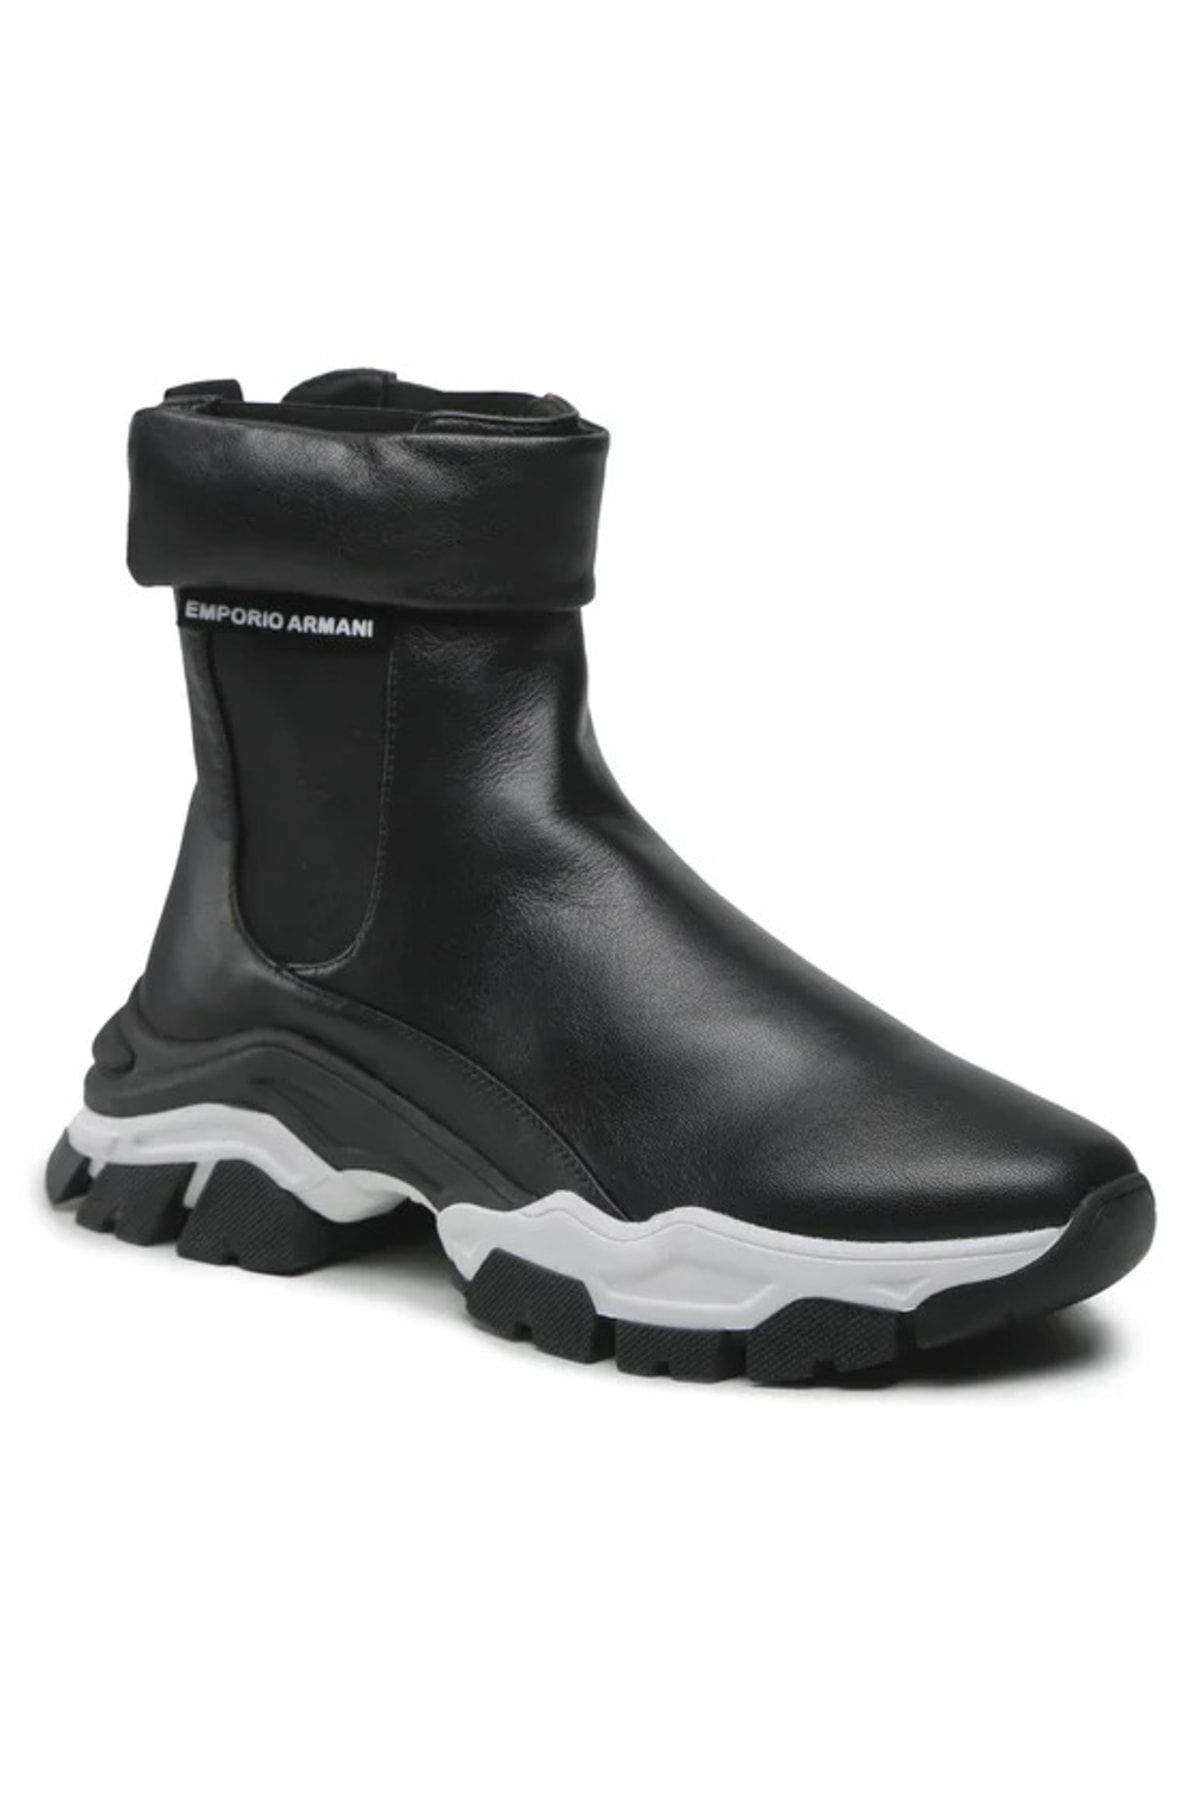 Emporio Armani Kadın Bağcıklı Logolu Günlük Kullanım Normal Kalıp Siyah Sneaker X3m357 Xf683-00002